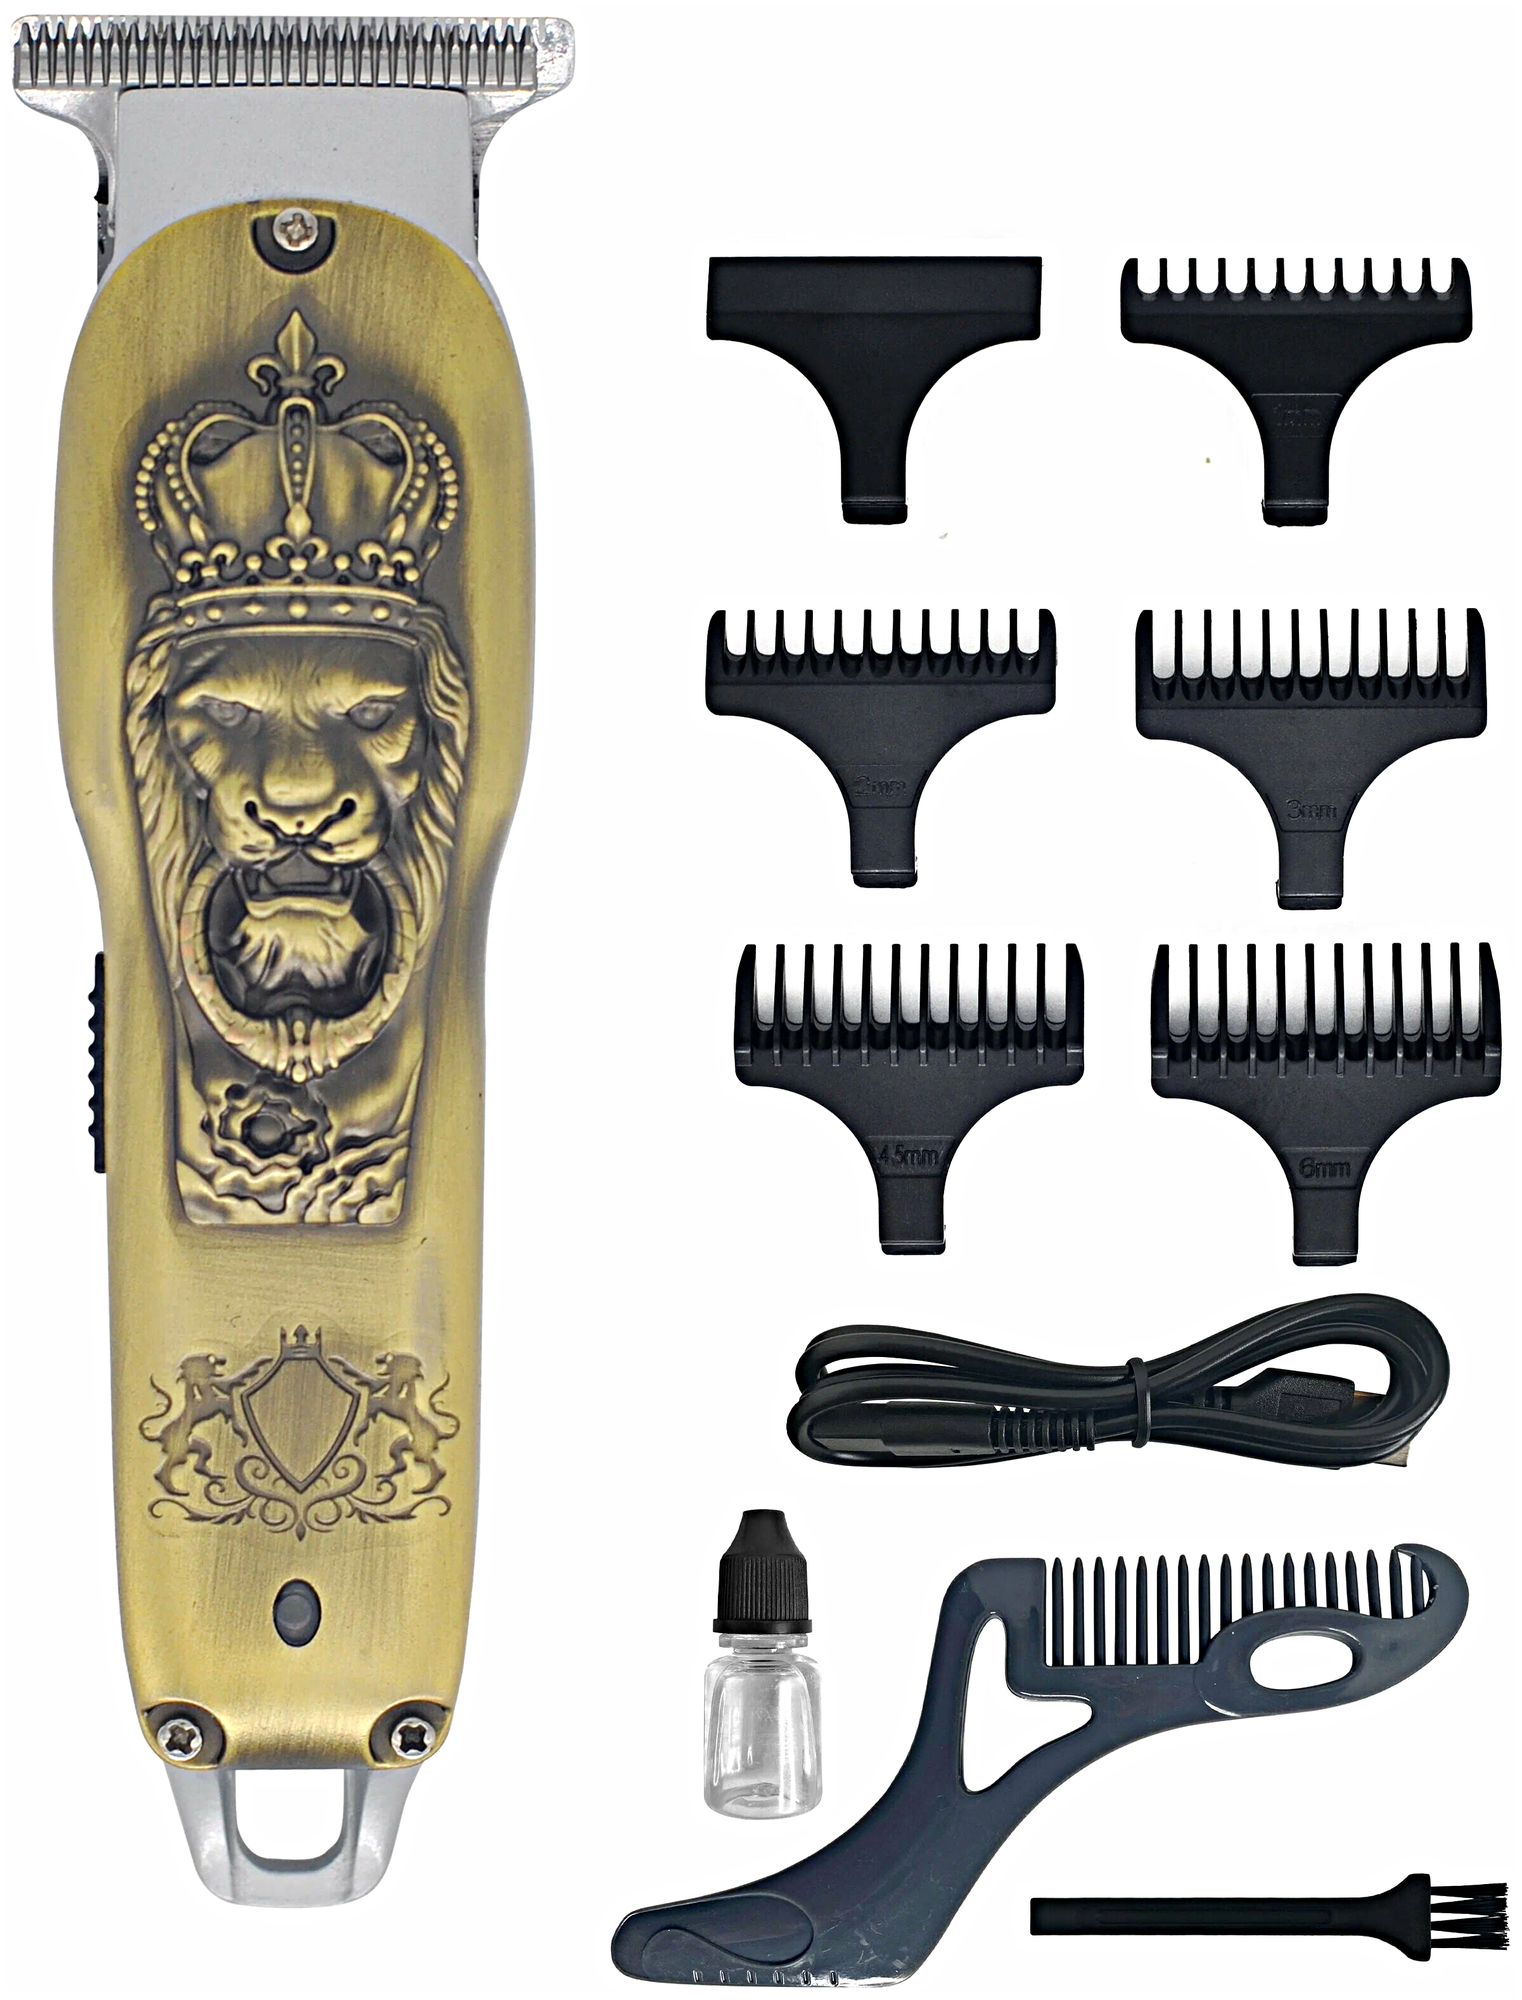 Машинка для стрижки волос HQ-300, Профессиональный триммер для стрижки волос, для бороды, усов, Золотистый